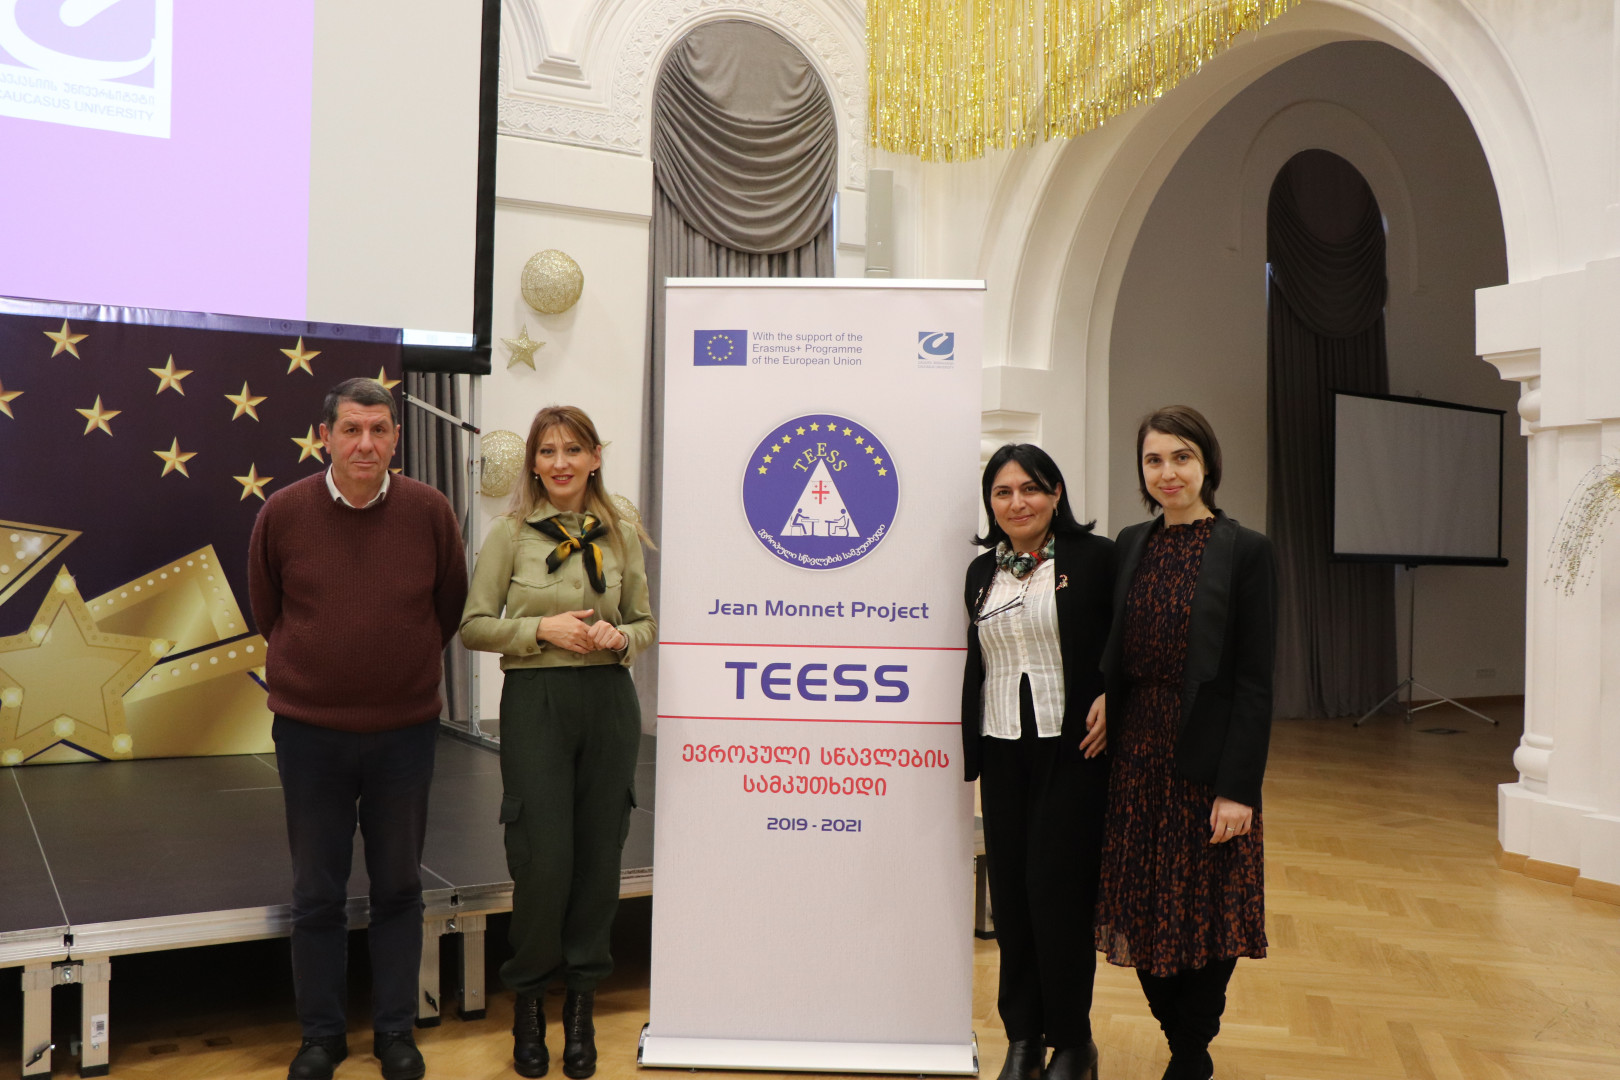 ჟან მონე 2019 პროექტი „ევროპული სწავლების სამკუთხედი“ (TEESS) - პრეზენტაცია